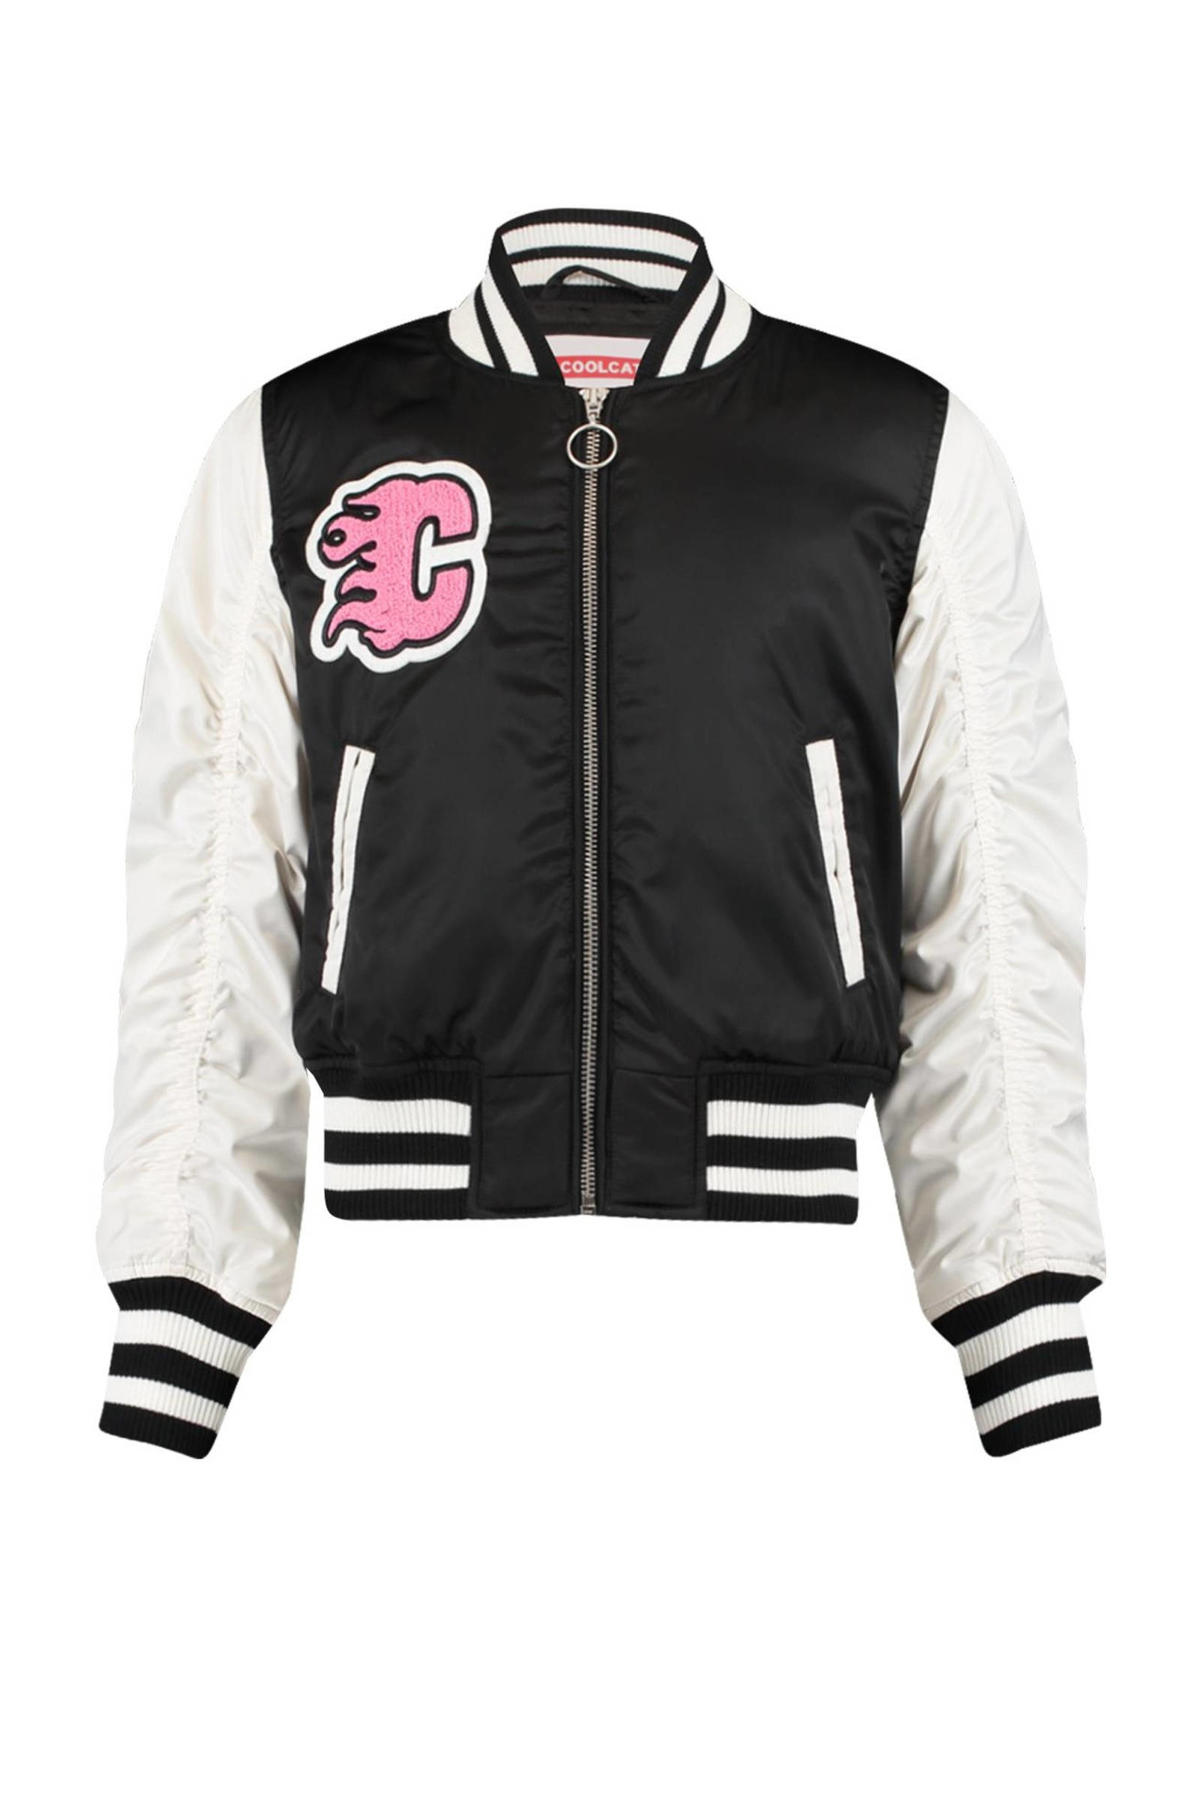 Morse code badminton Republiek CoolCat Junior baseball jacket Jade CG met tekst zwart/wit/roze | wehkamp